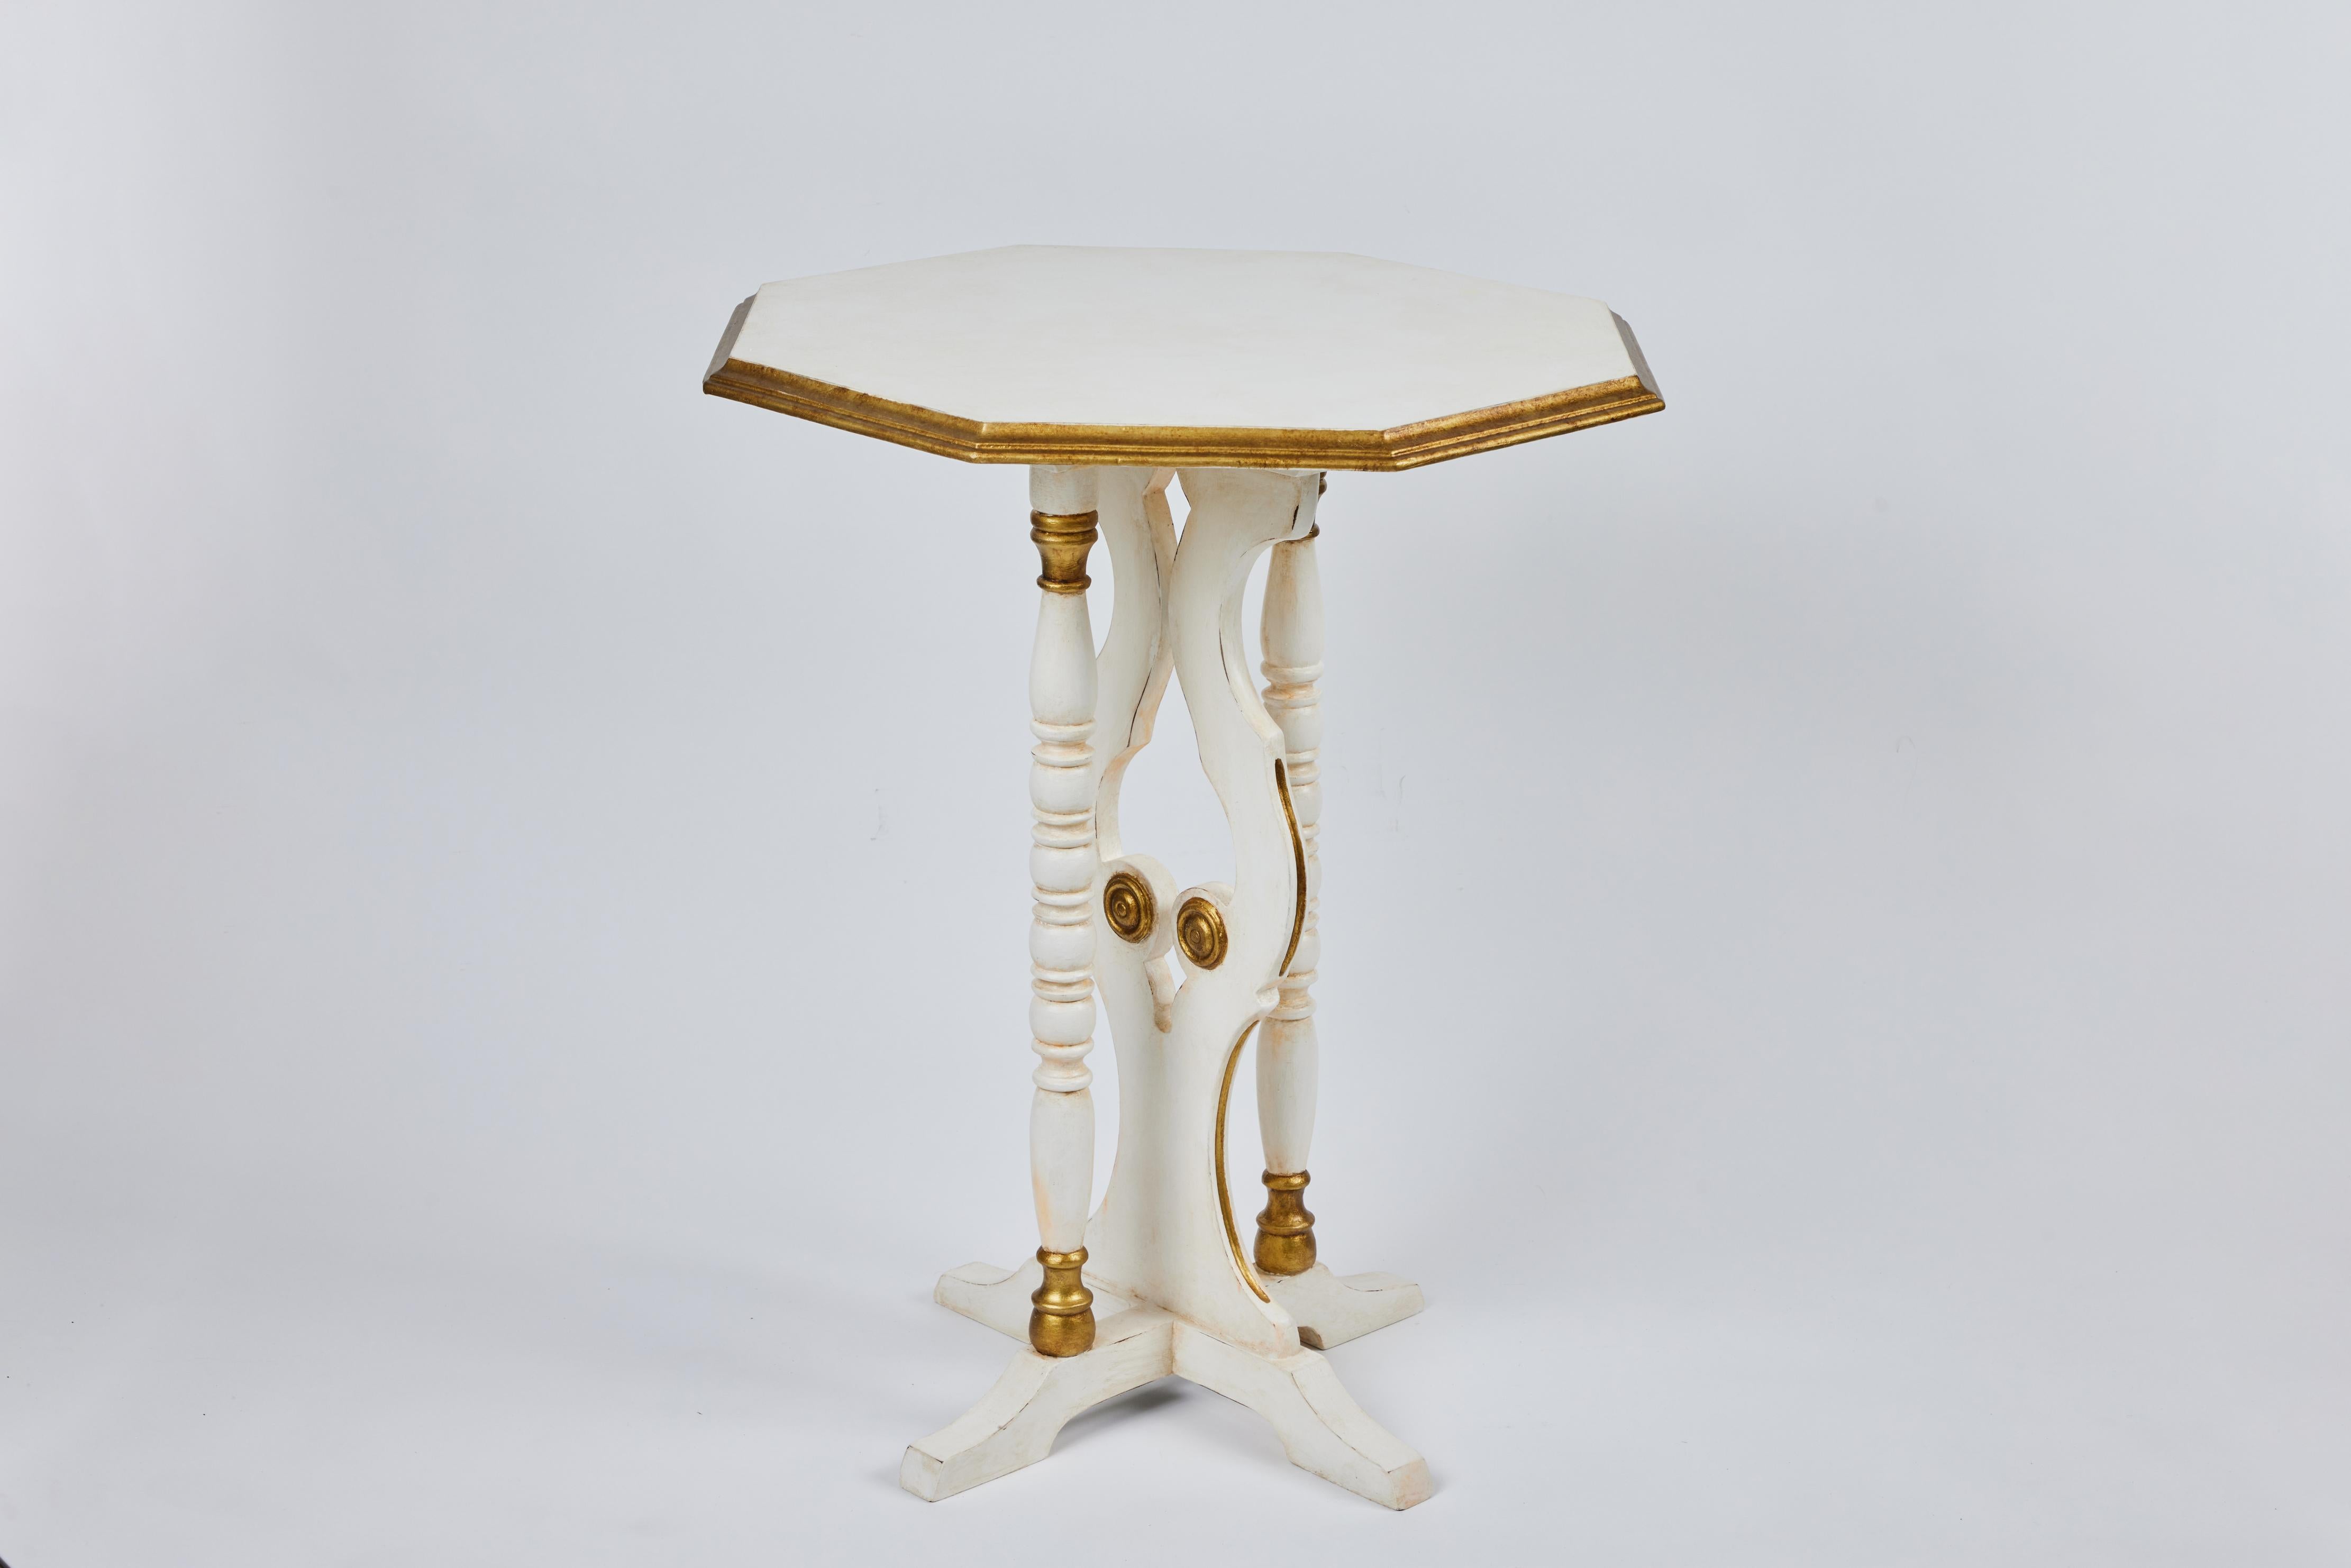 Kleiner achteckiger Vintage-Beistelltisch mit Sockel und gedrechselten Beinen. Neu lackiert in antikem Weiß mit antiken Golddetails.

Maße: 20,25